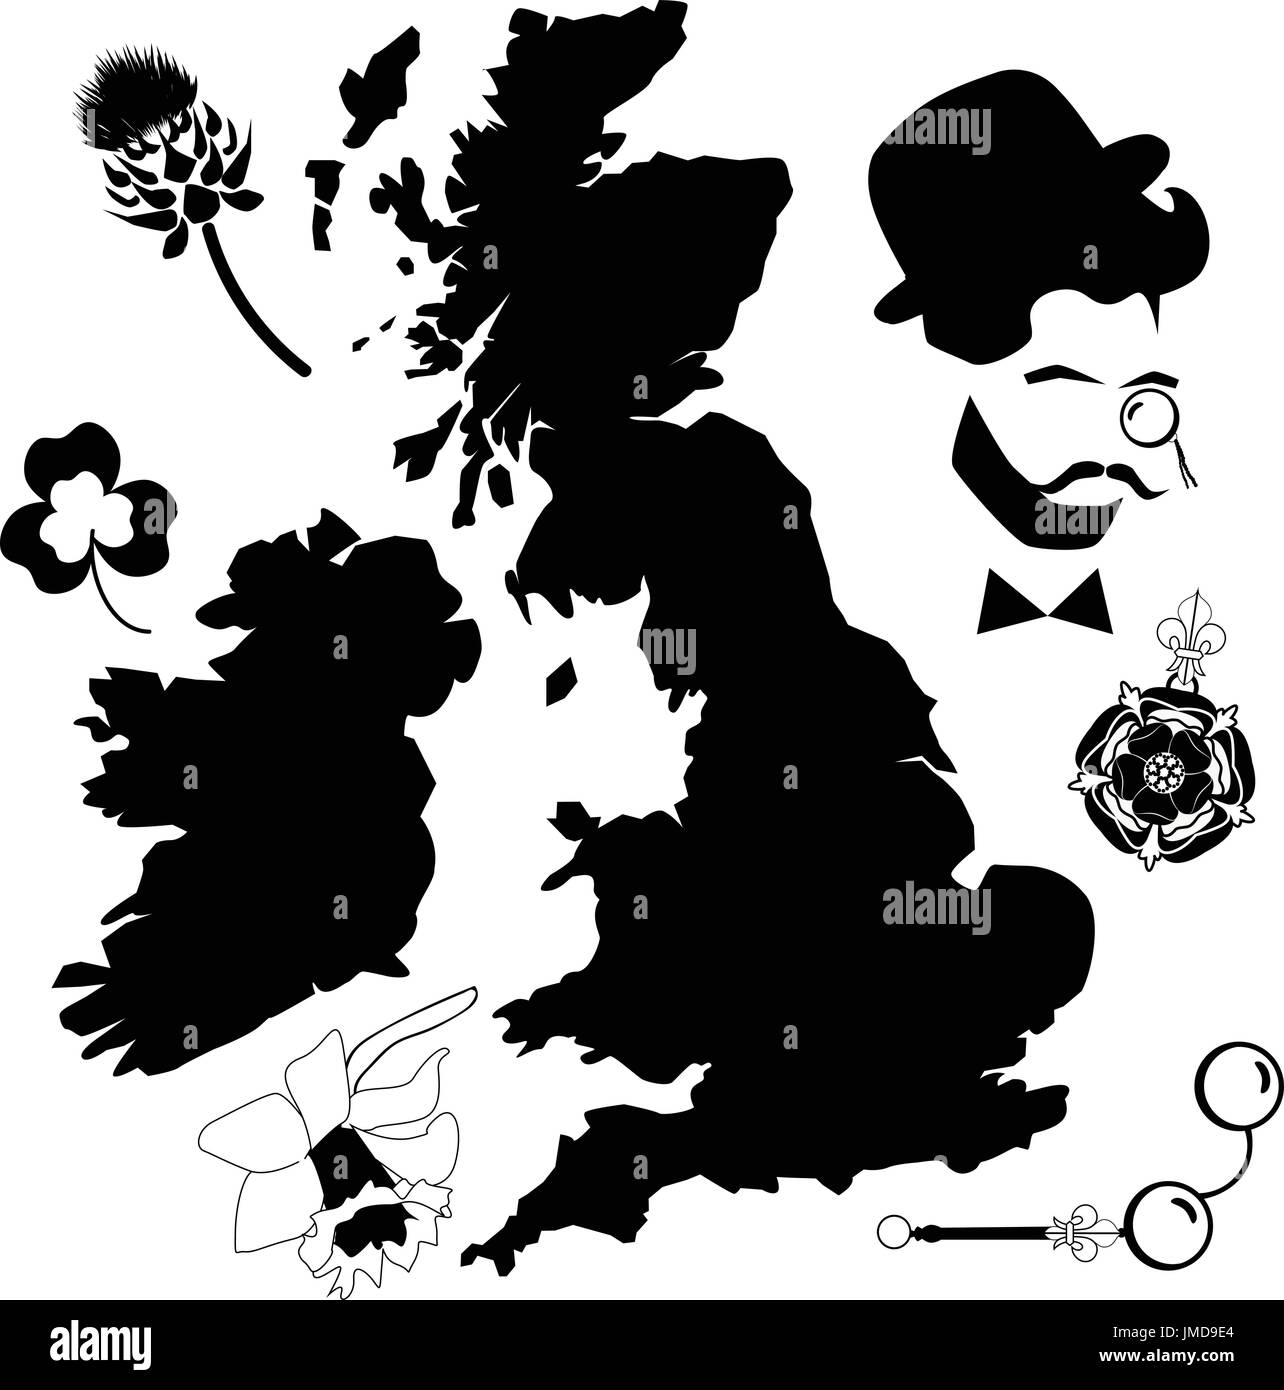 UK-Karte und Symbole in schwarz / weiß Stock Vektor